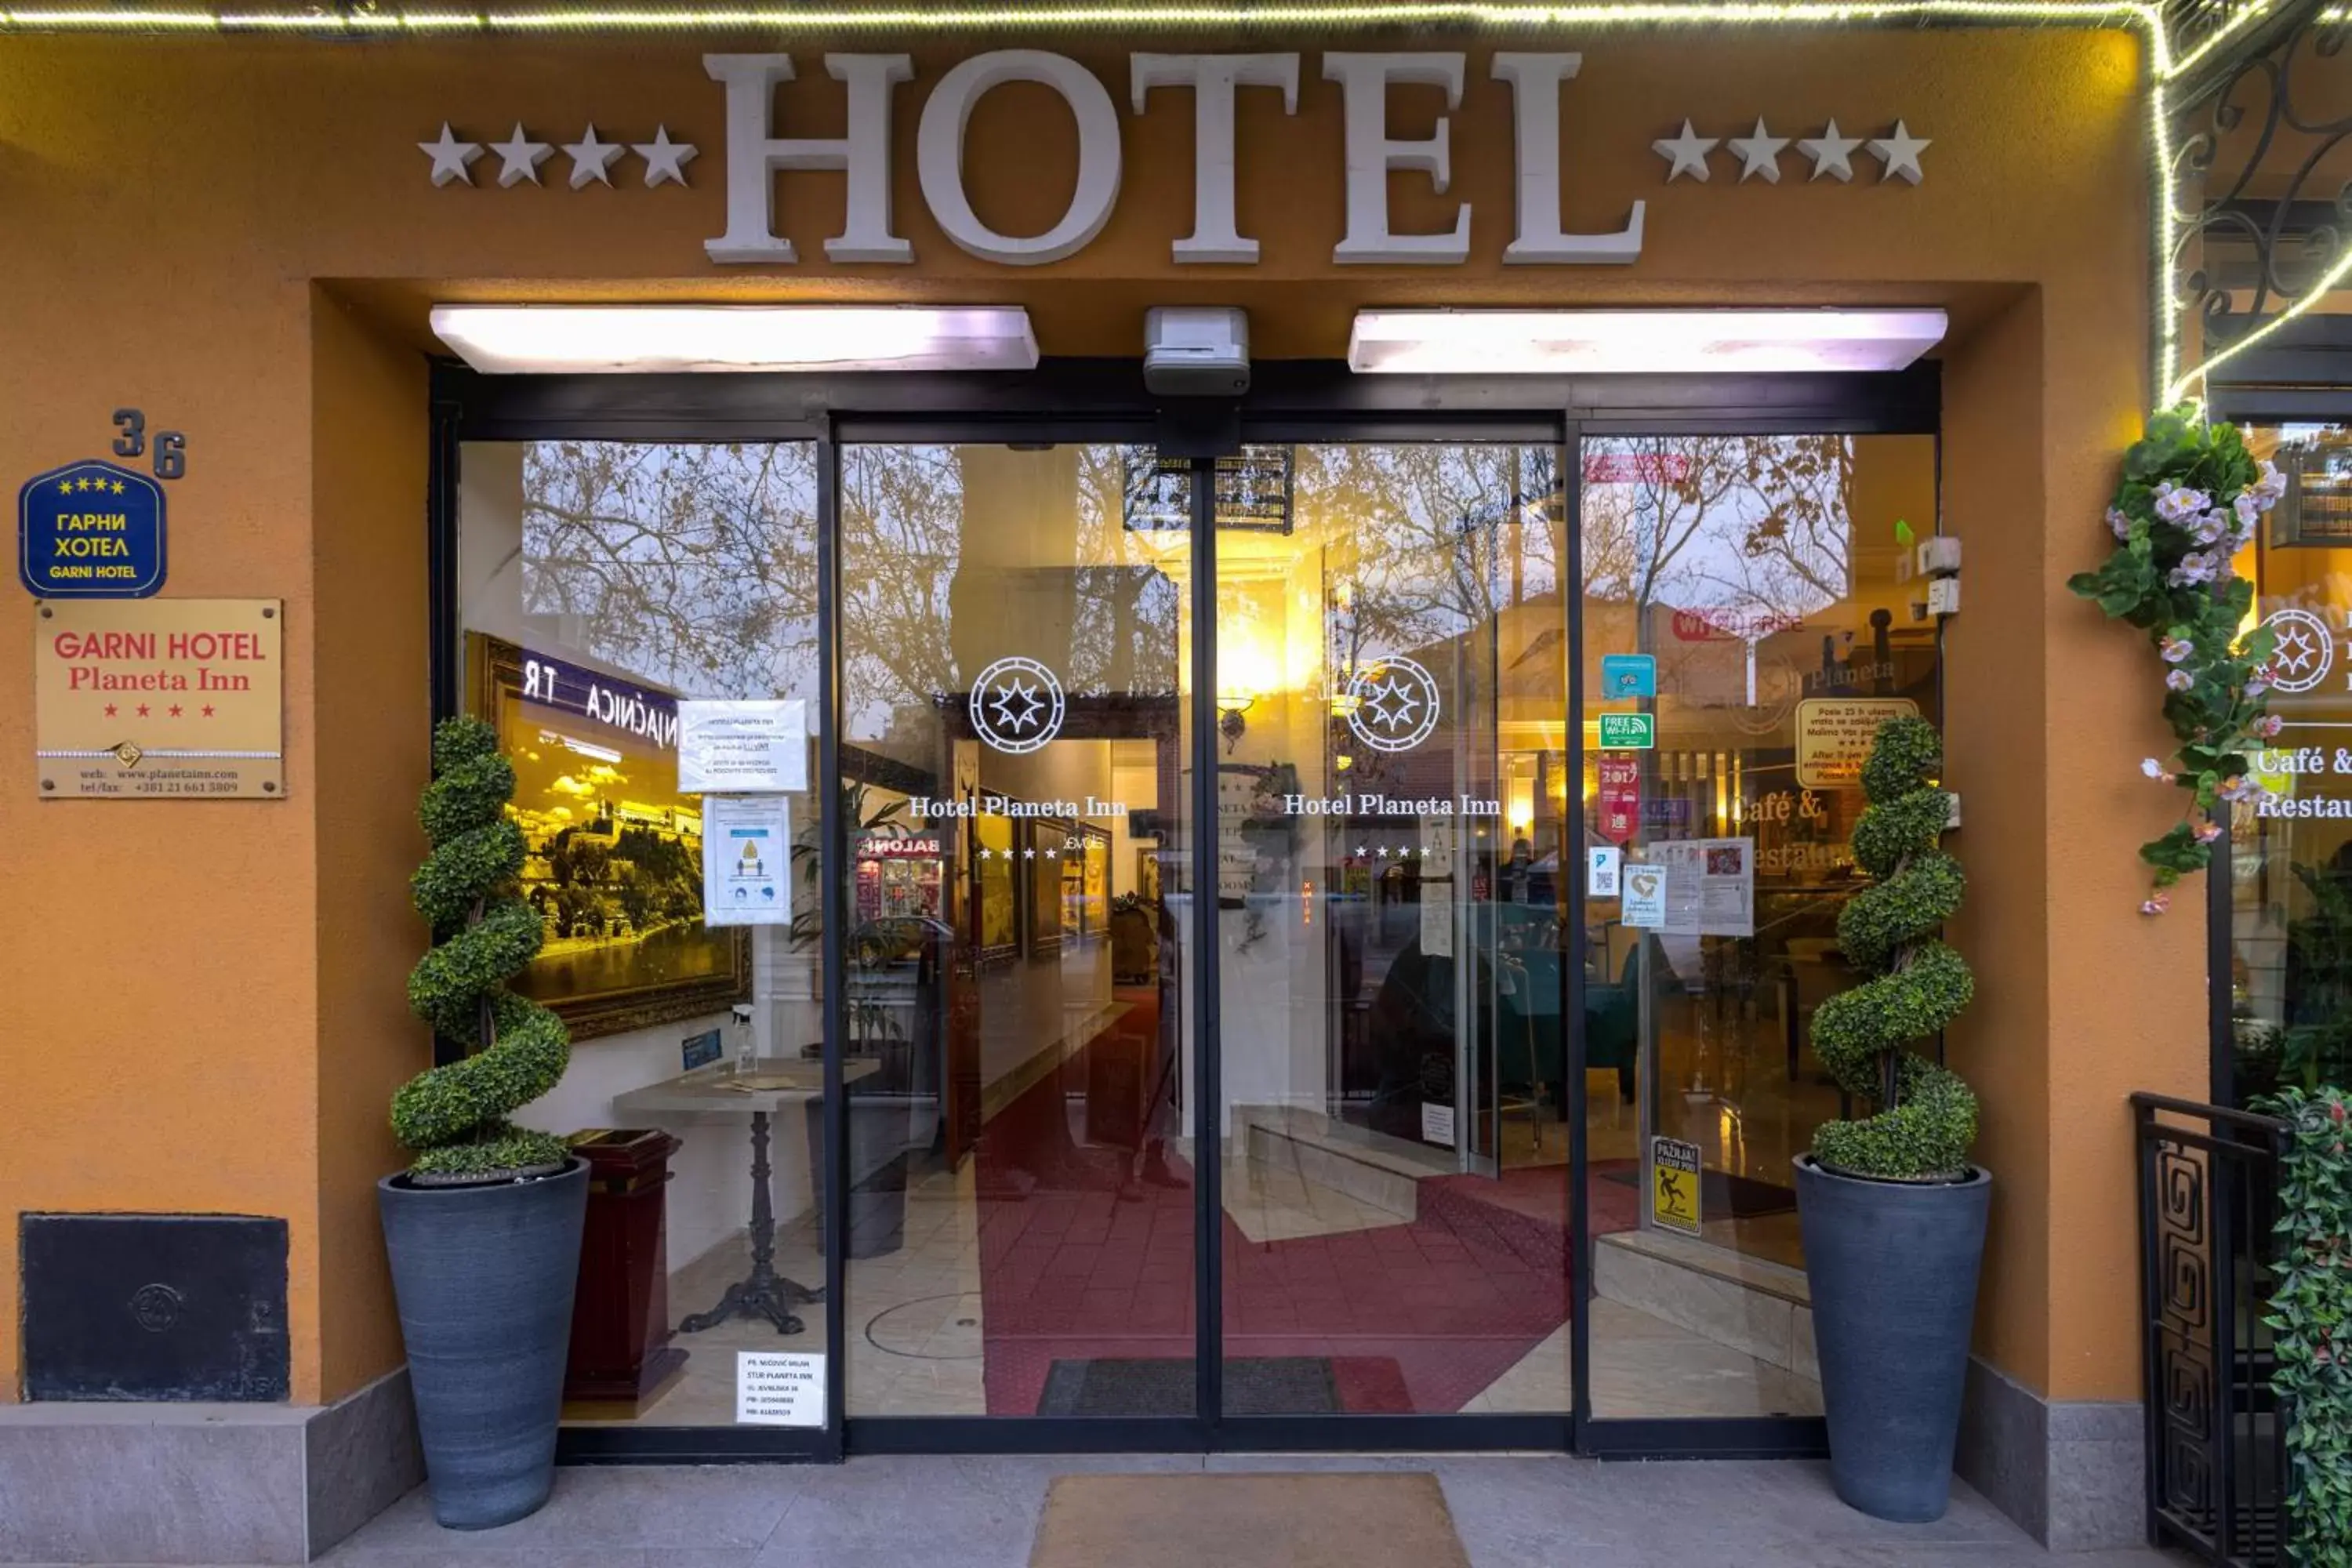 Facade/entrance in Garni Hotel Planeta Inn